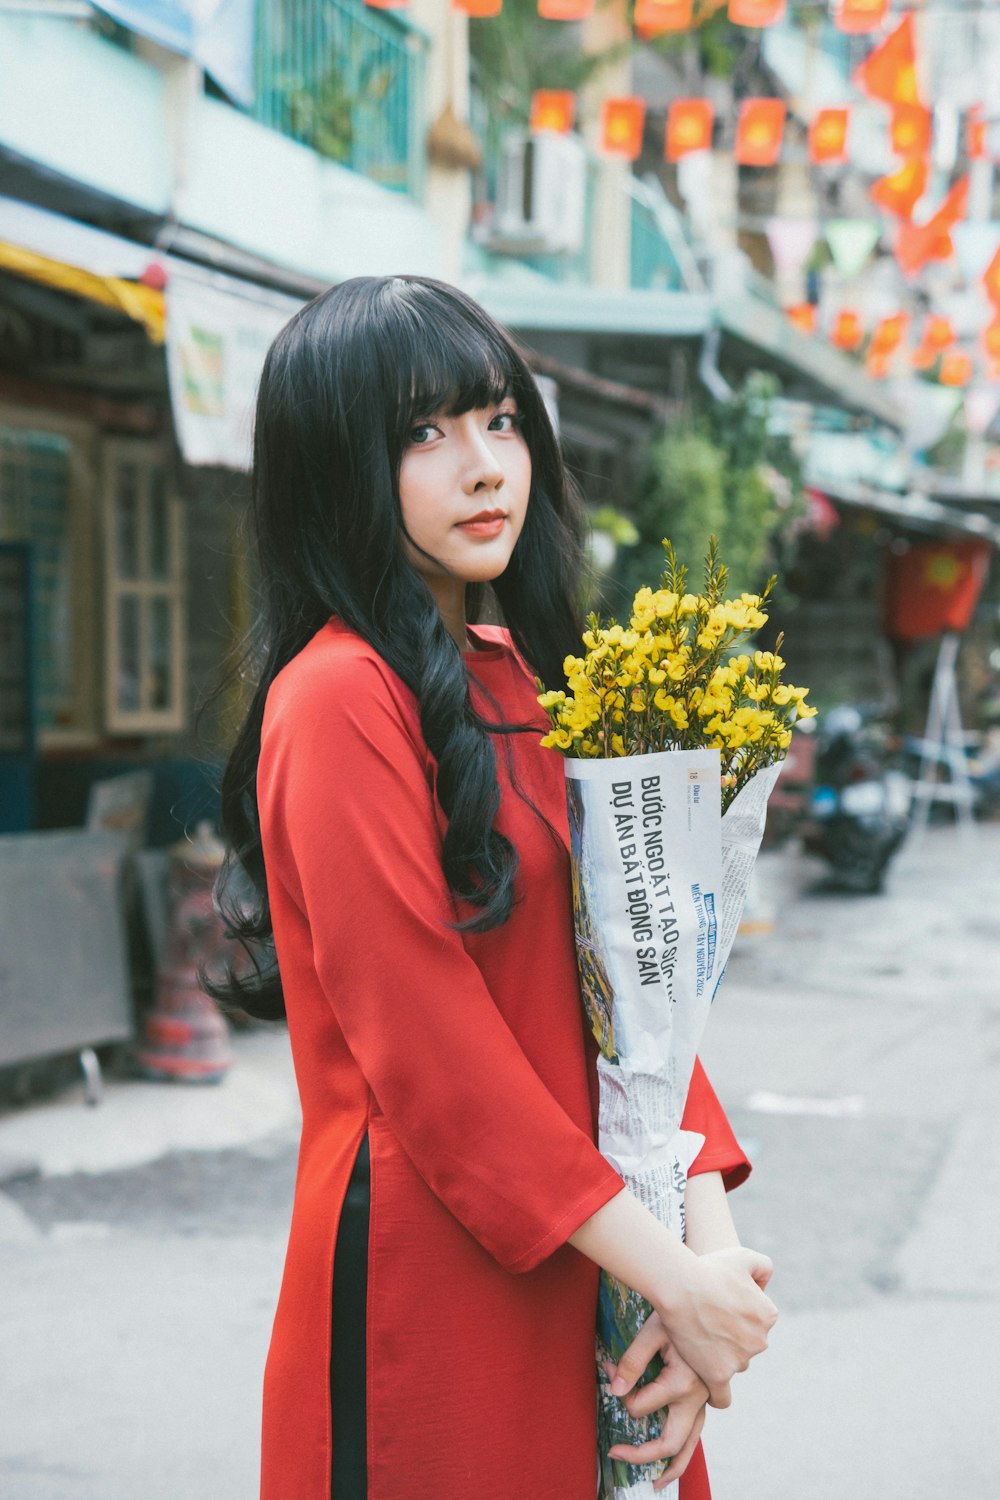 uma mulher em um vestido vermelho segurando um buquê de flores